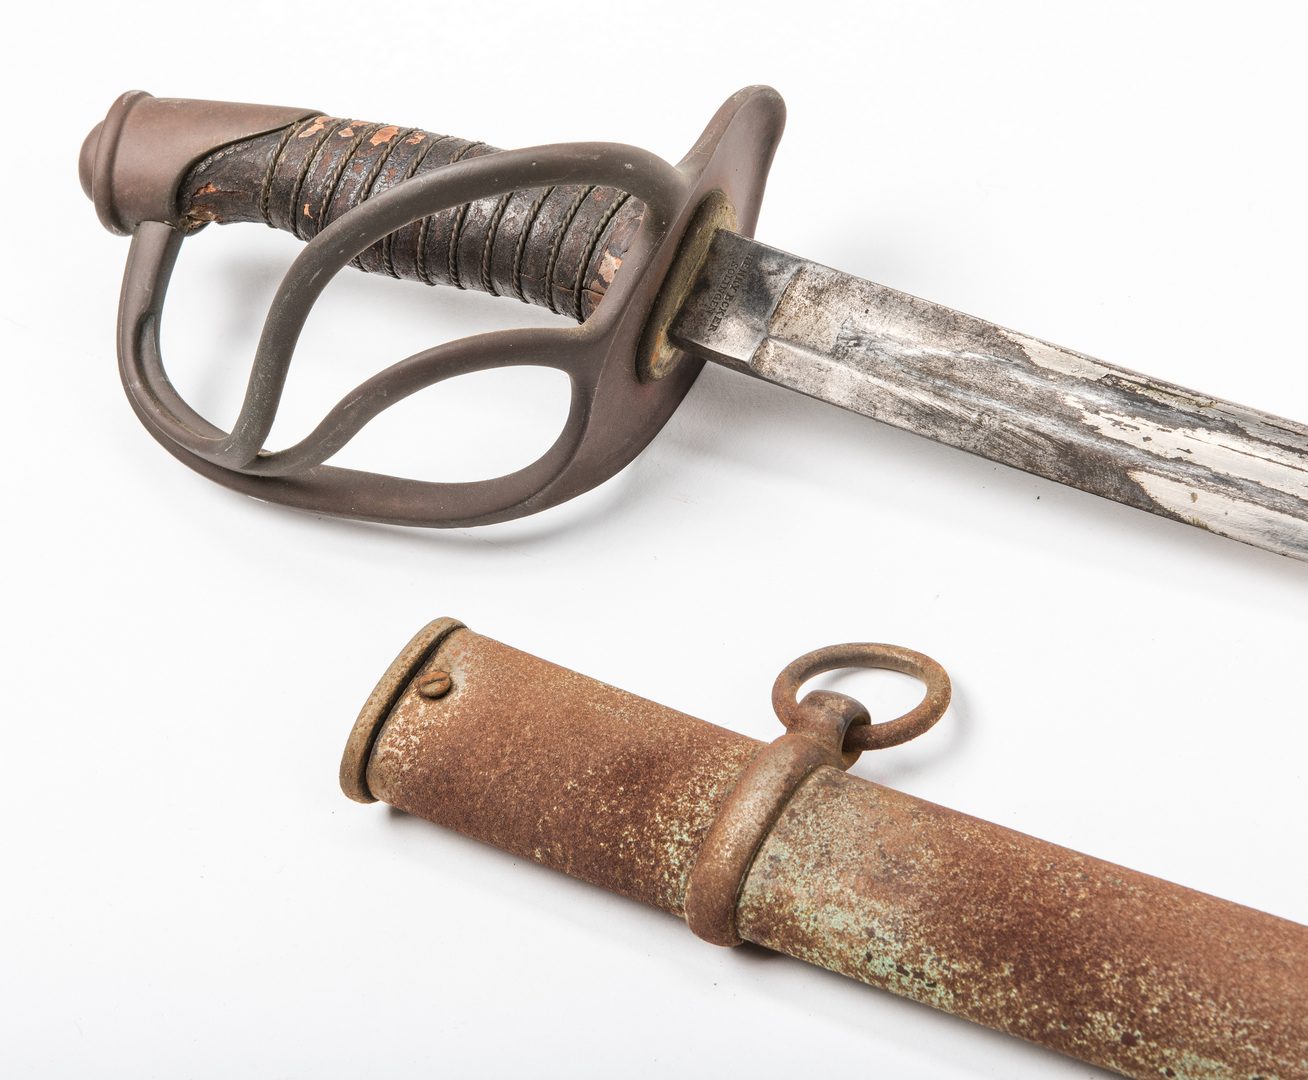 Lot 529: Civil War H. Boker Model 1860 Sword plus later Sash